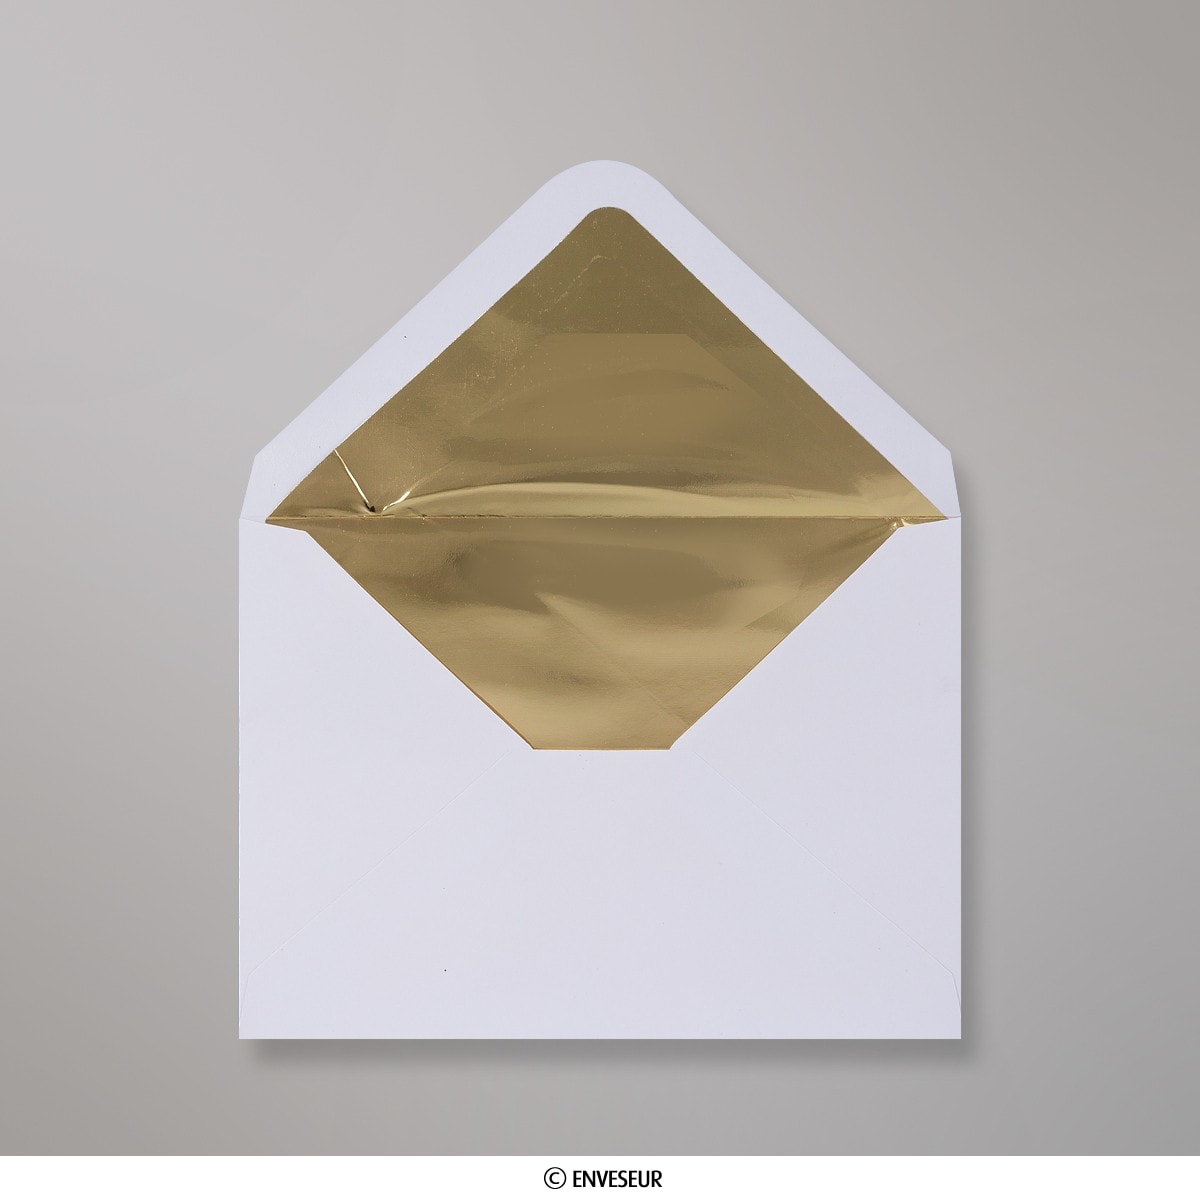 200 Enveloppe en papier doublé bulle avec fermeture adhésive 49,99